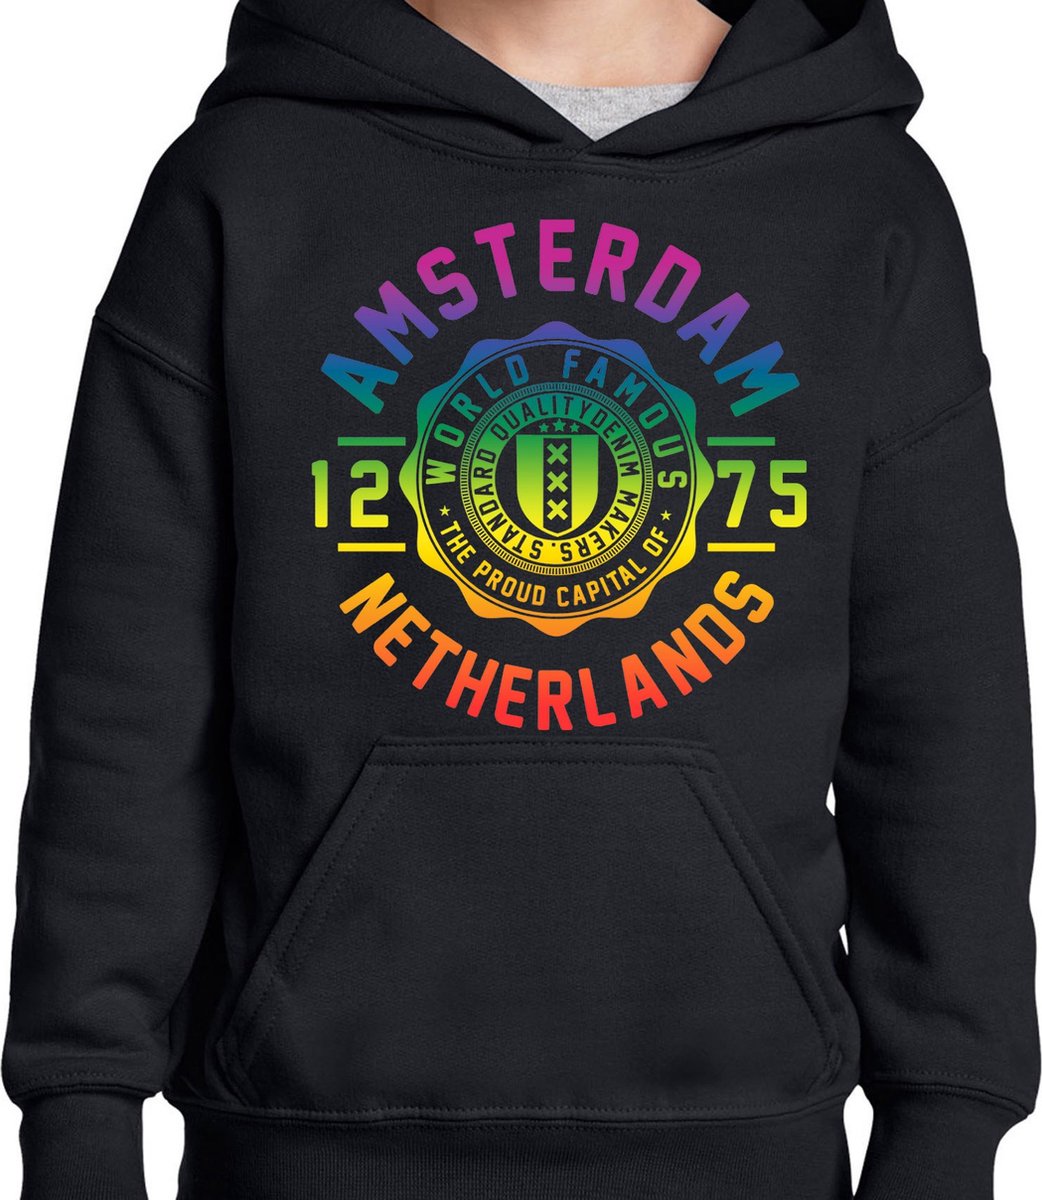 Hooded Sweater - Met Trekkoord - Capuchon - Chill - Trui - Vest - met capuchon - Outdoor - Gay Pride - Pride Rainbow - Regenboog - Amsterdam - World Famous - Zwart - Maat M